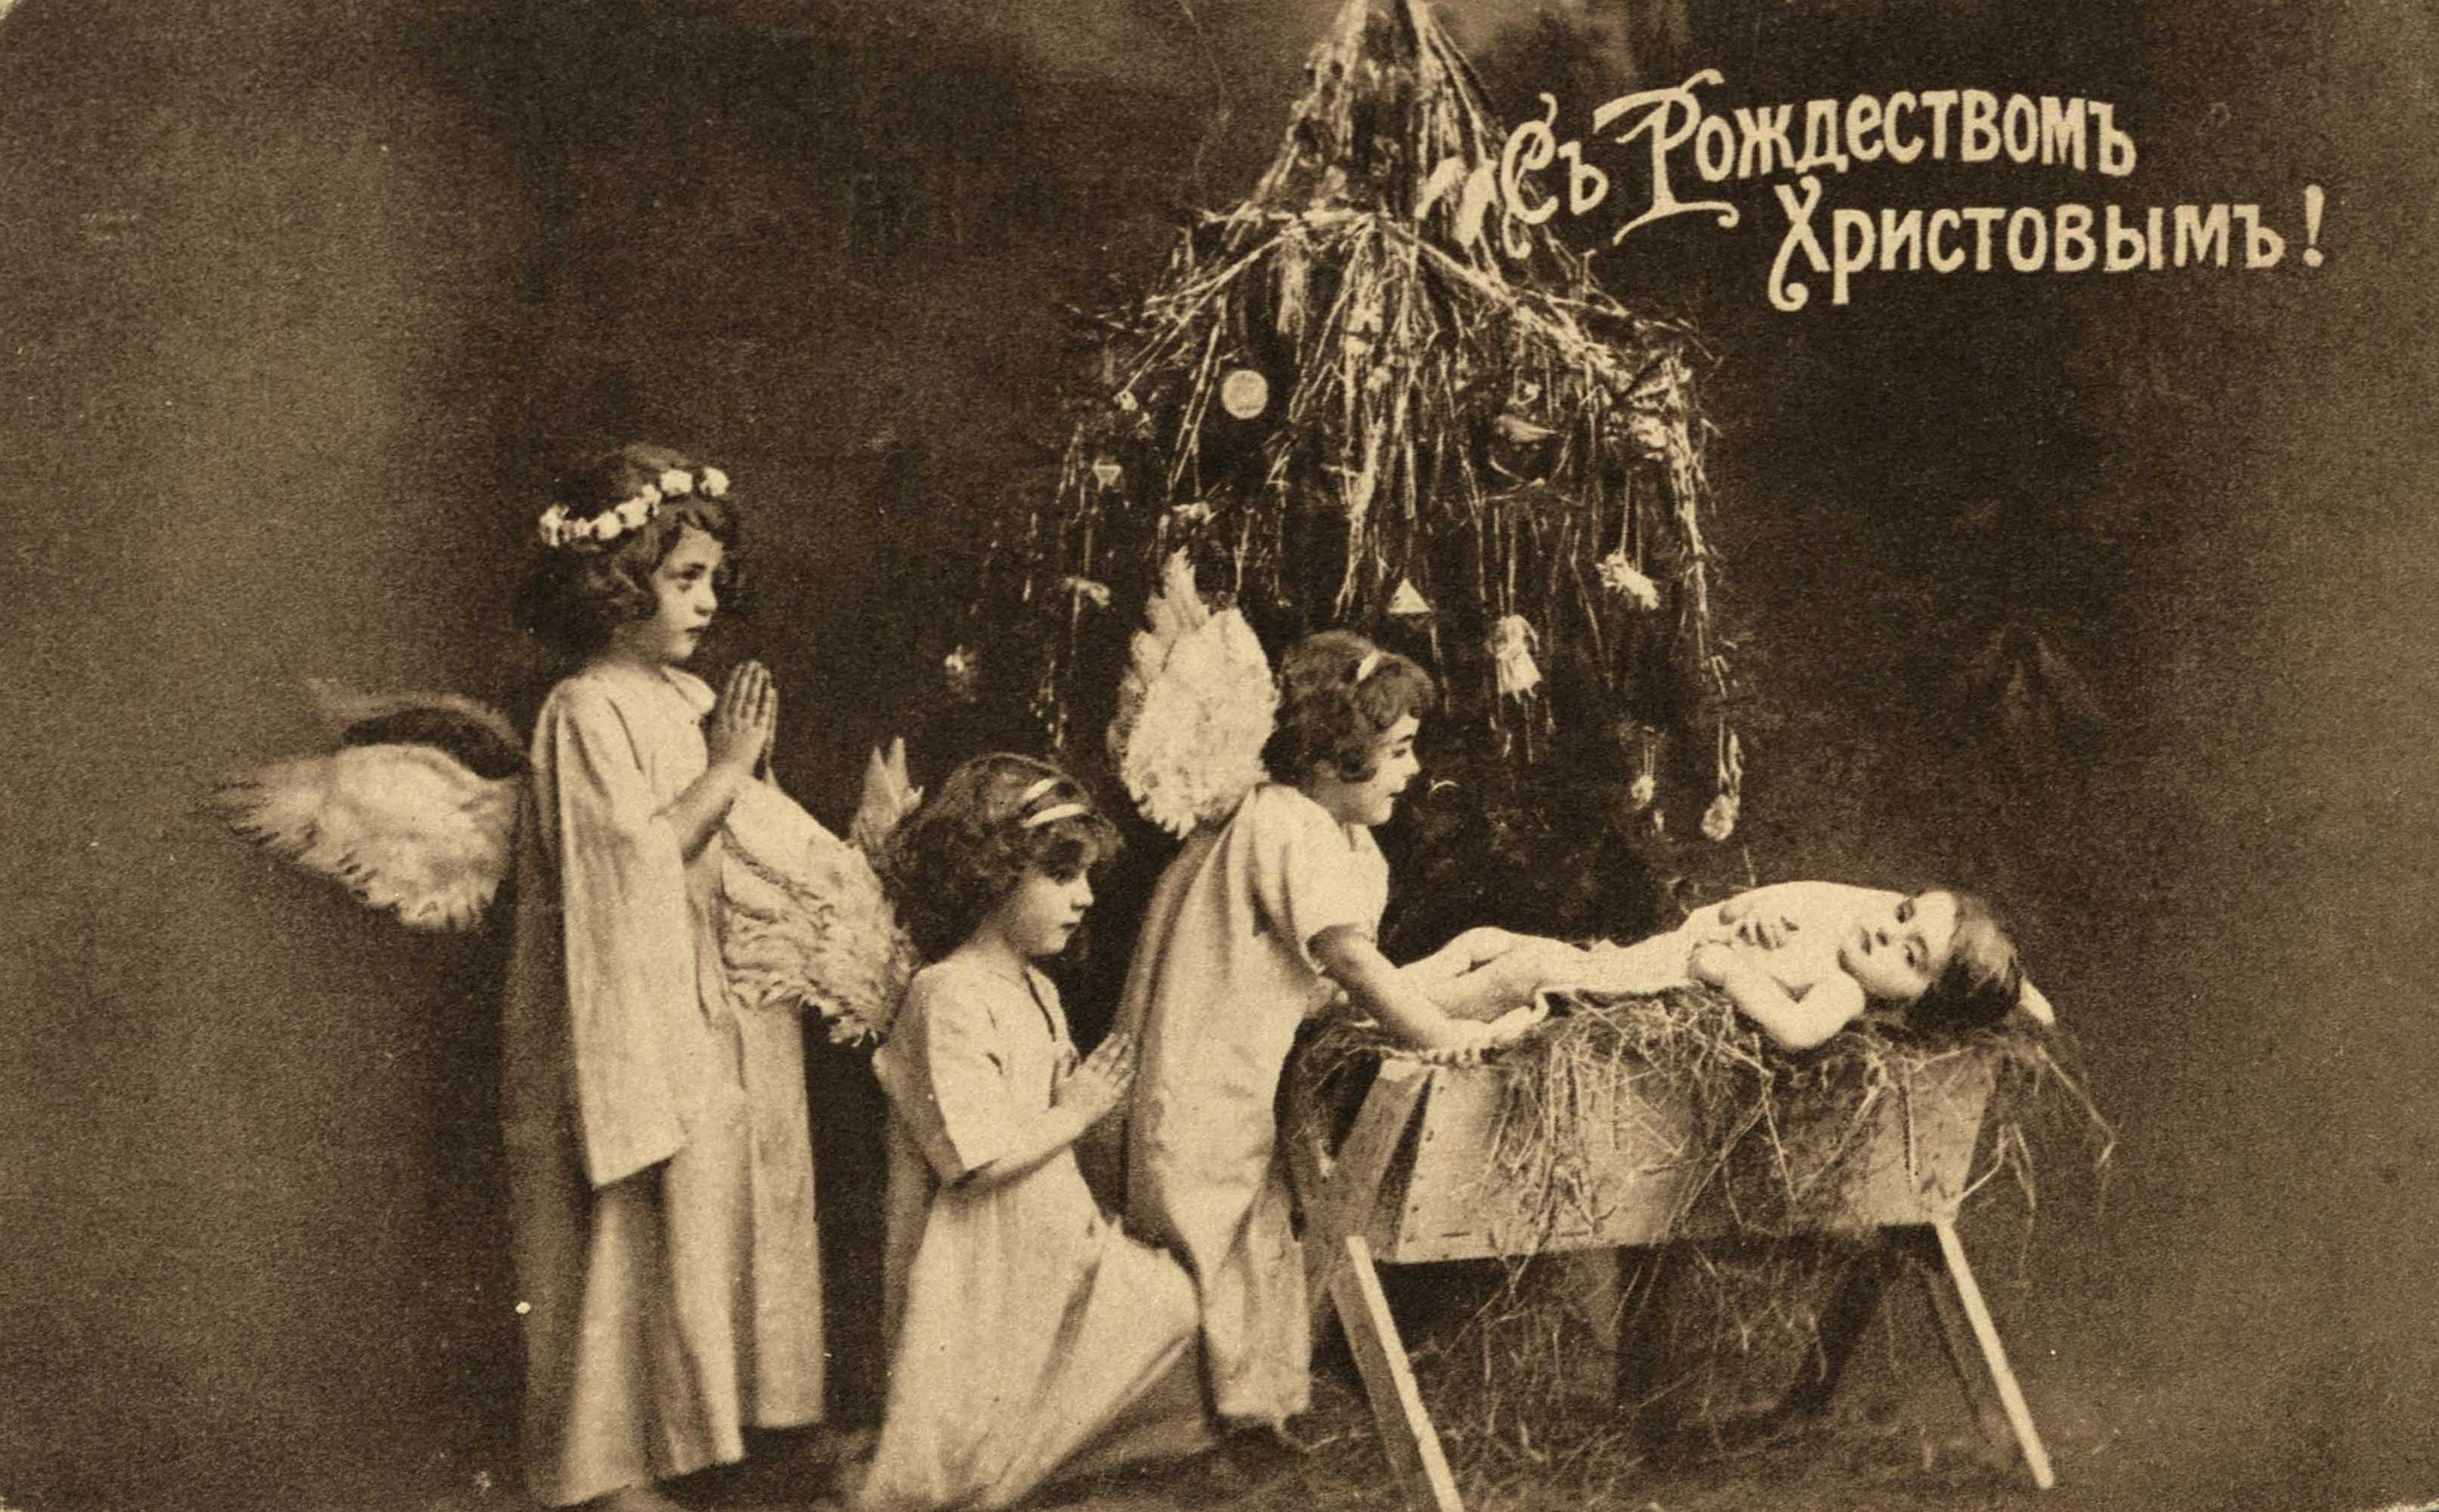 Открытка «С Рождеством Христовым!» — Москва : Типо-литография Братьев Менерт (бывшая Кирстен), 1914, 1915